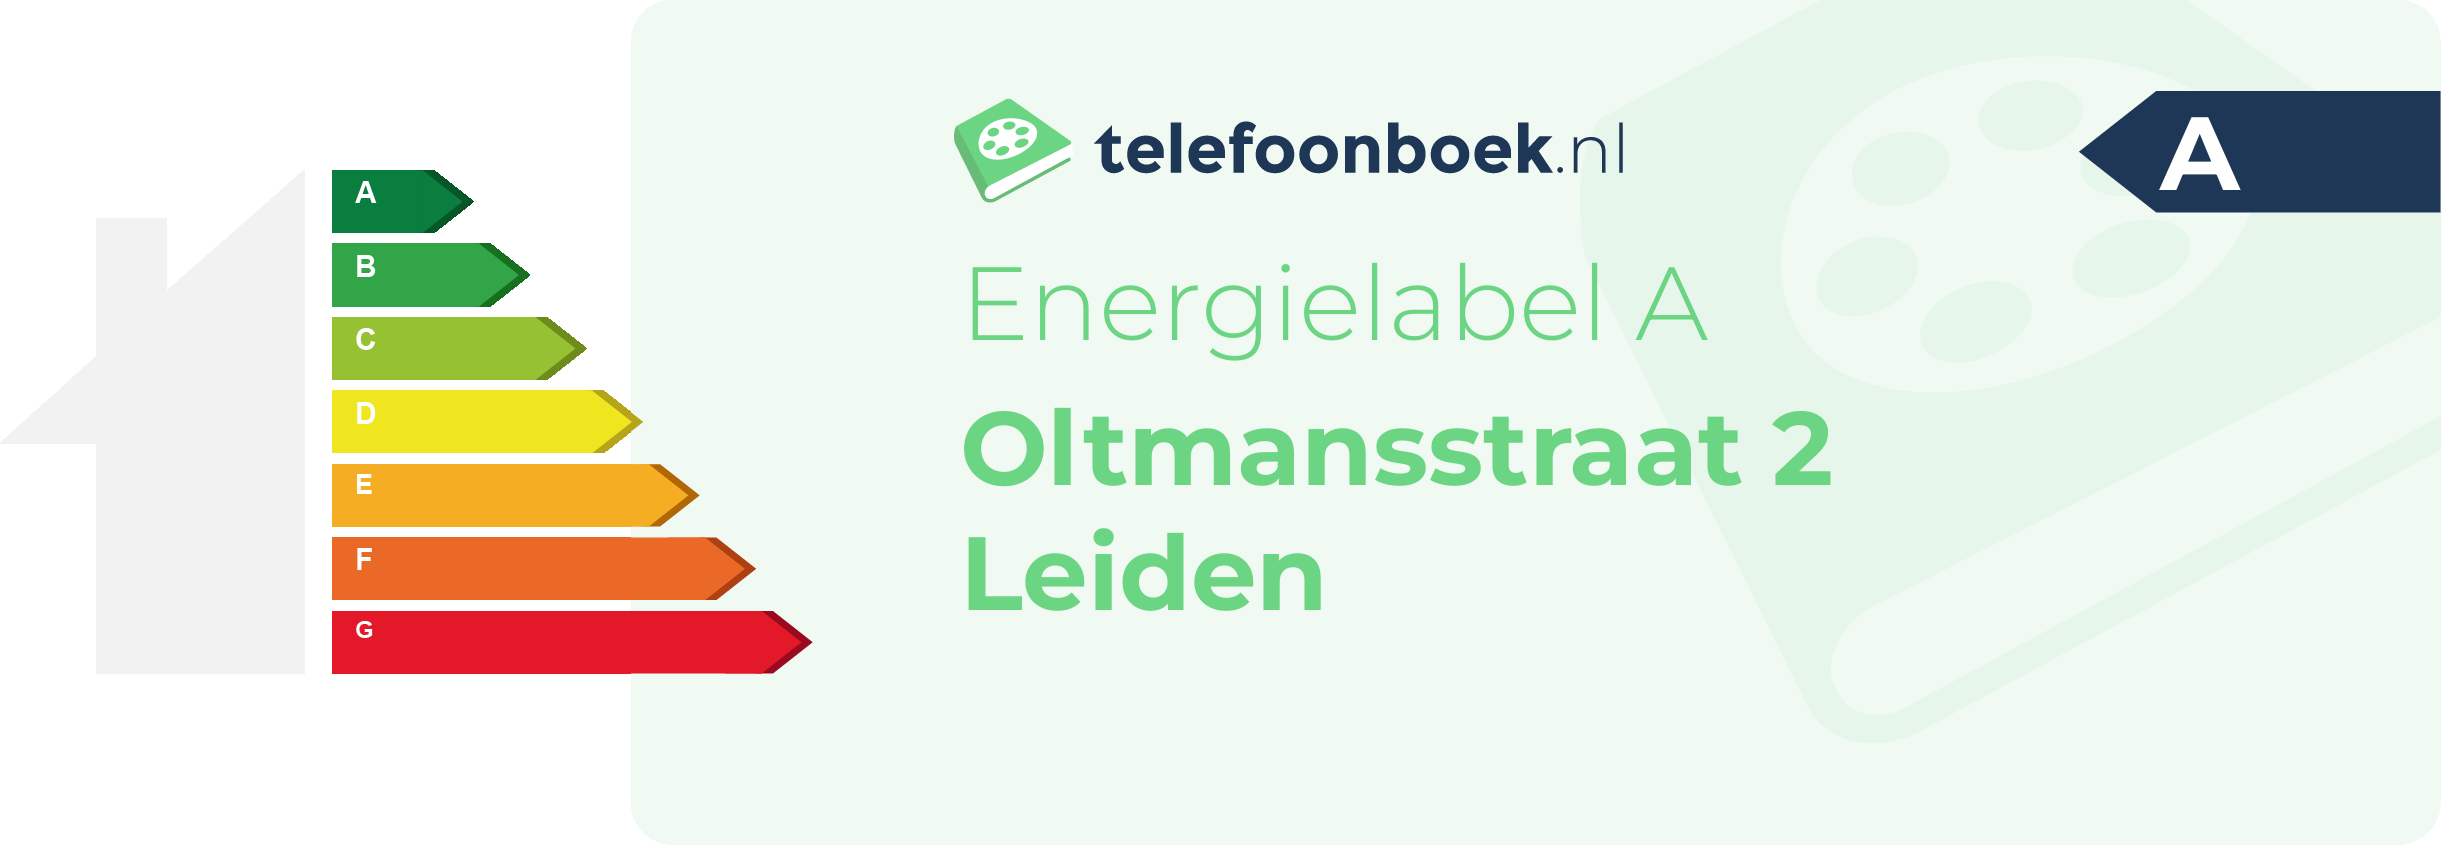 Energielabel Oltmansstraat 2 Leiden